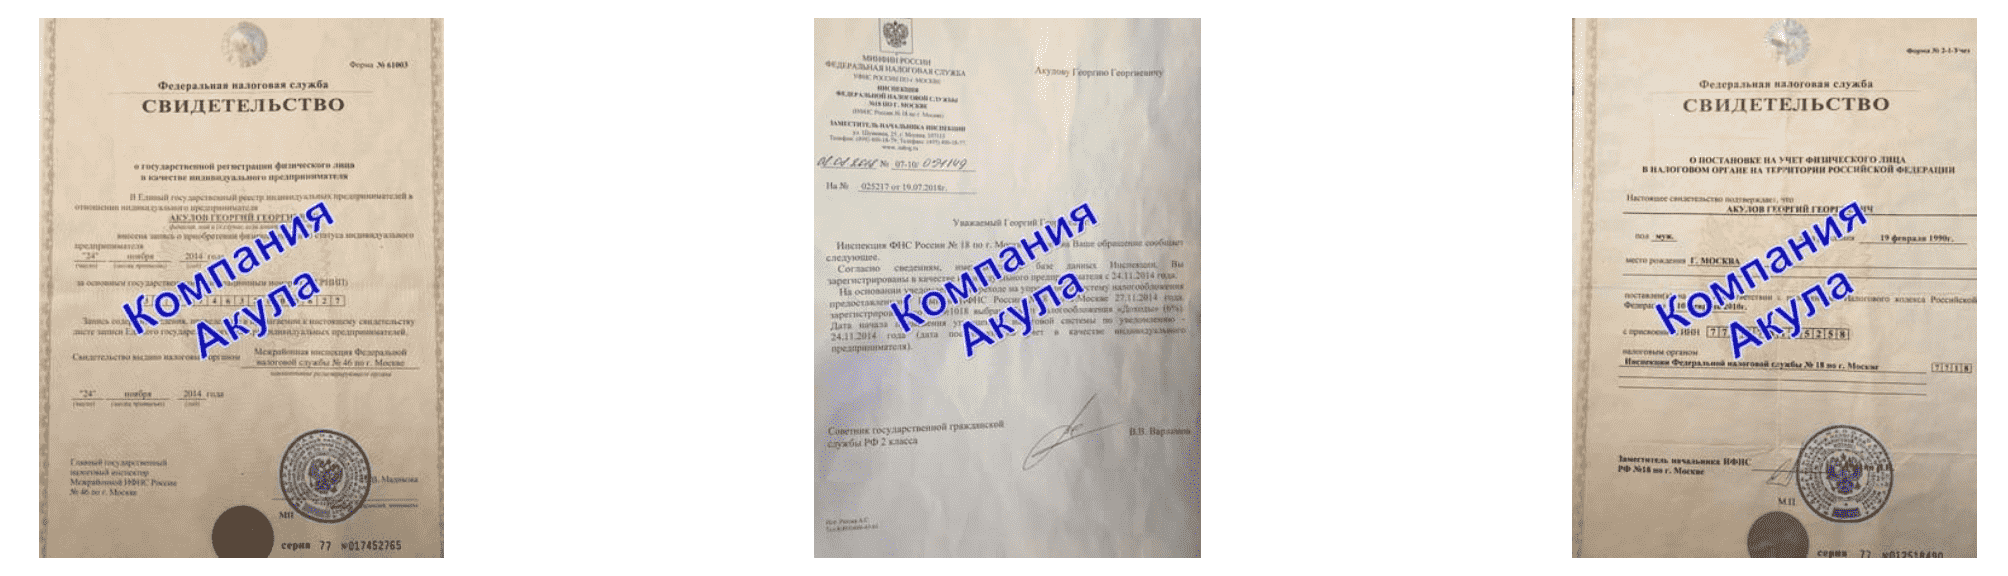 Документы компании по раздаче листовок Нижний Новгород